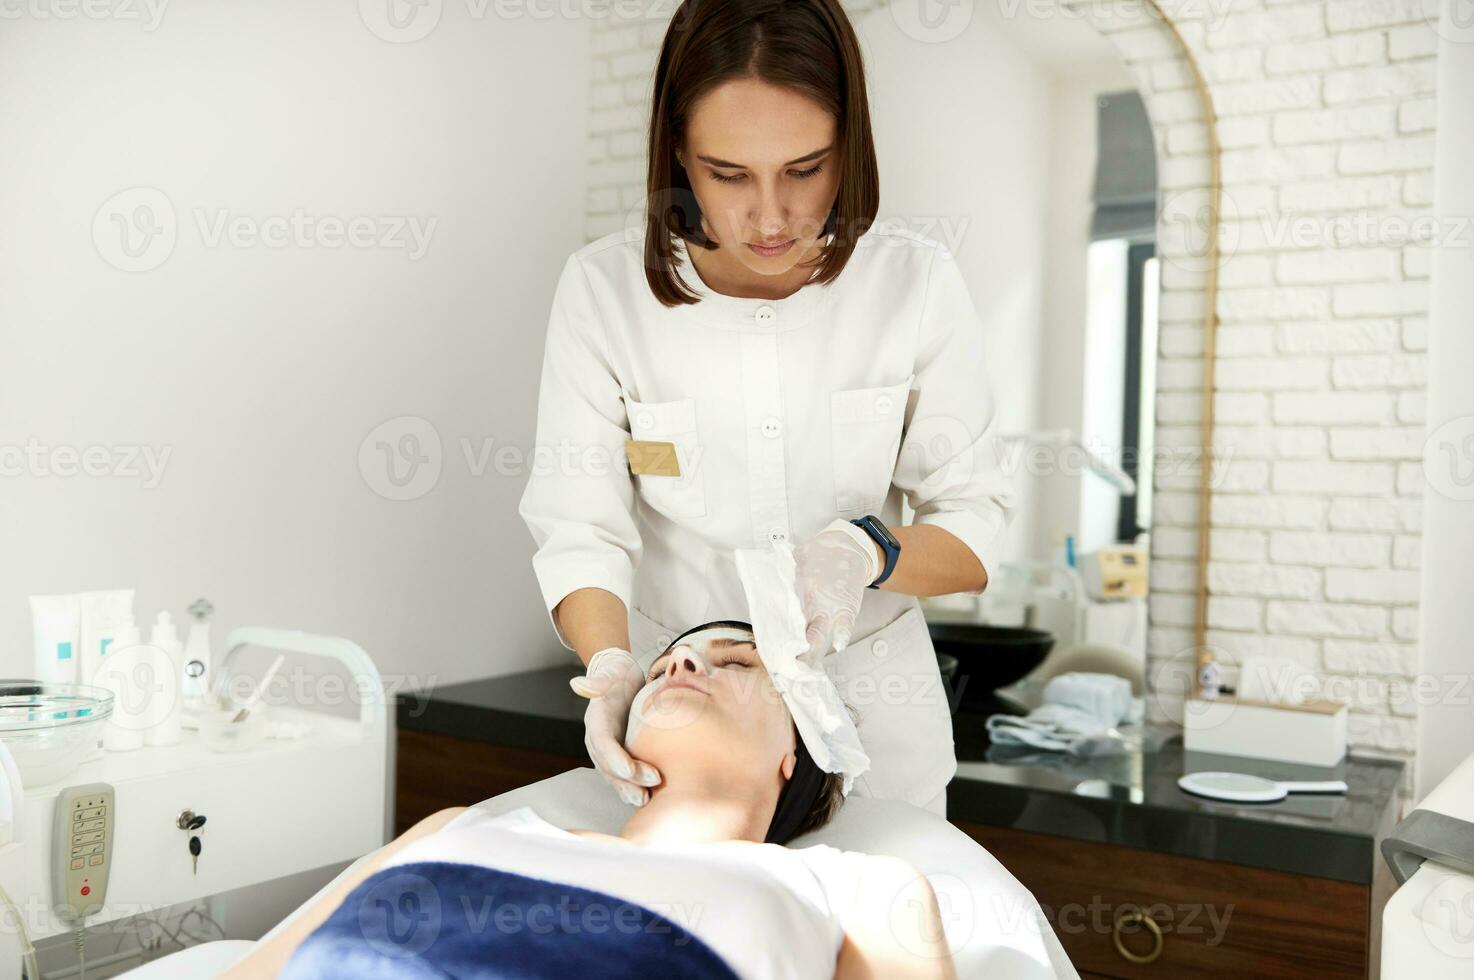 läkare kosmetolog utför skönhet procedur på kvinna ansikte, avlägsnande de resten av alginat mask använder sig av särskild våt servetter. professionell hud vård i kosmetologi klinik foto